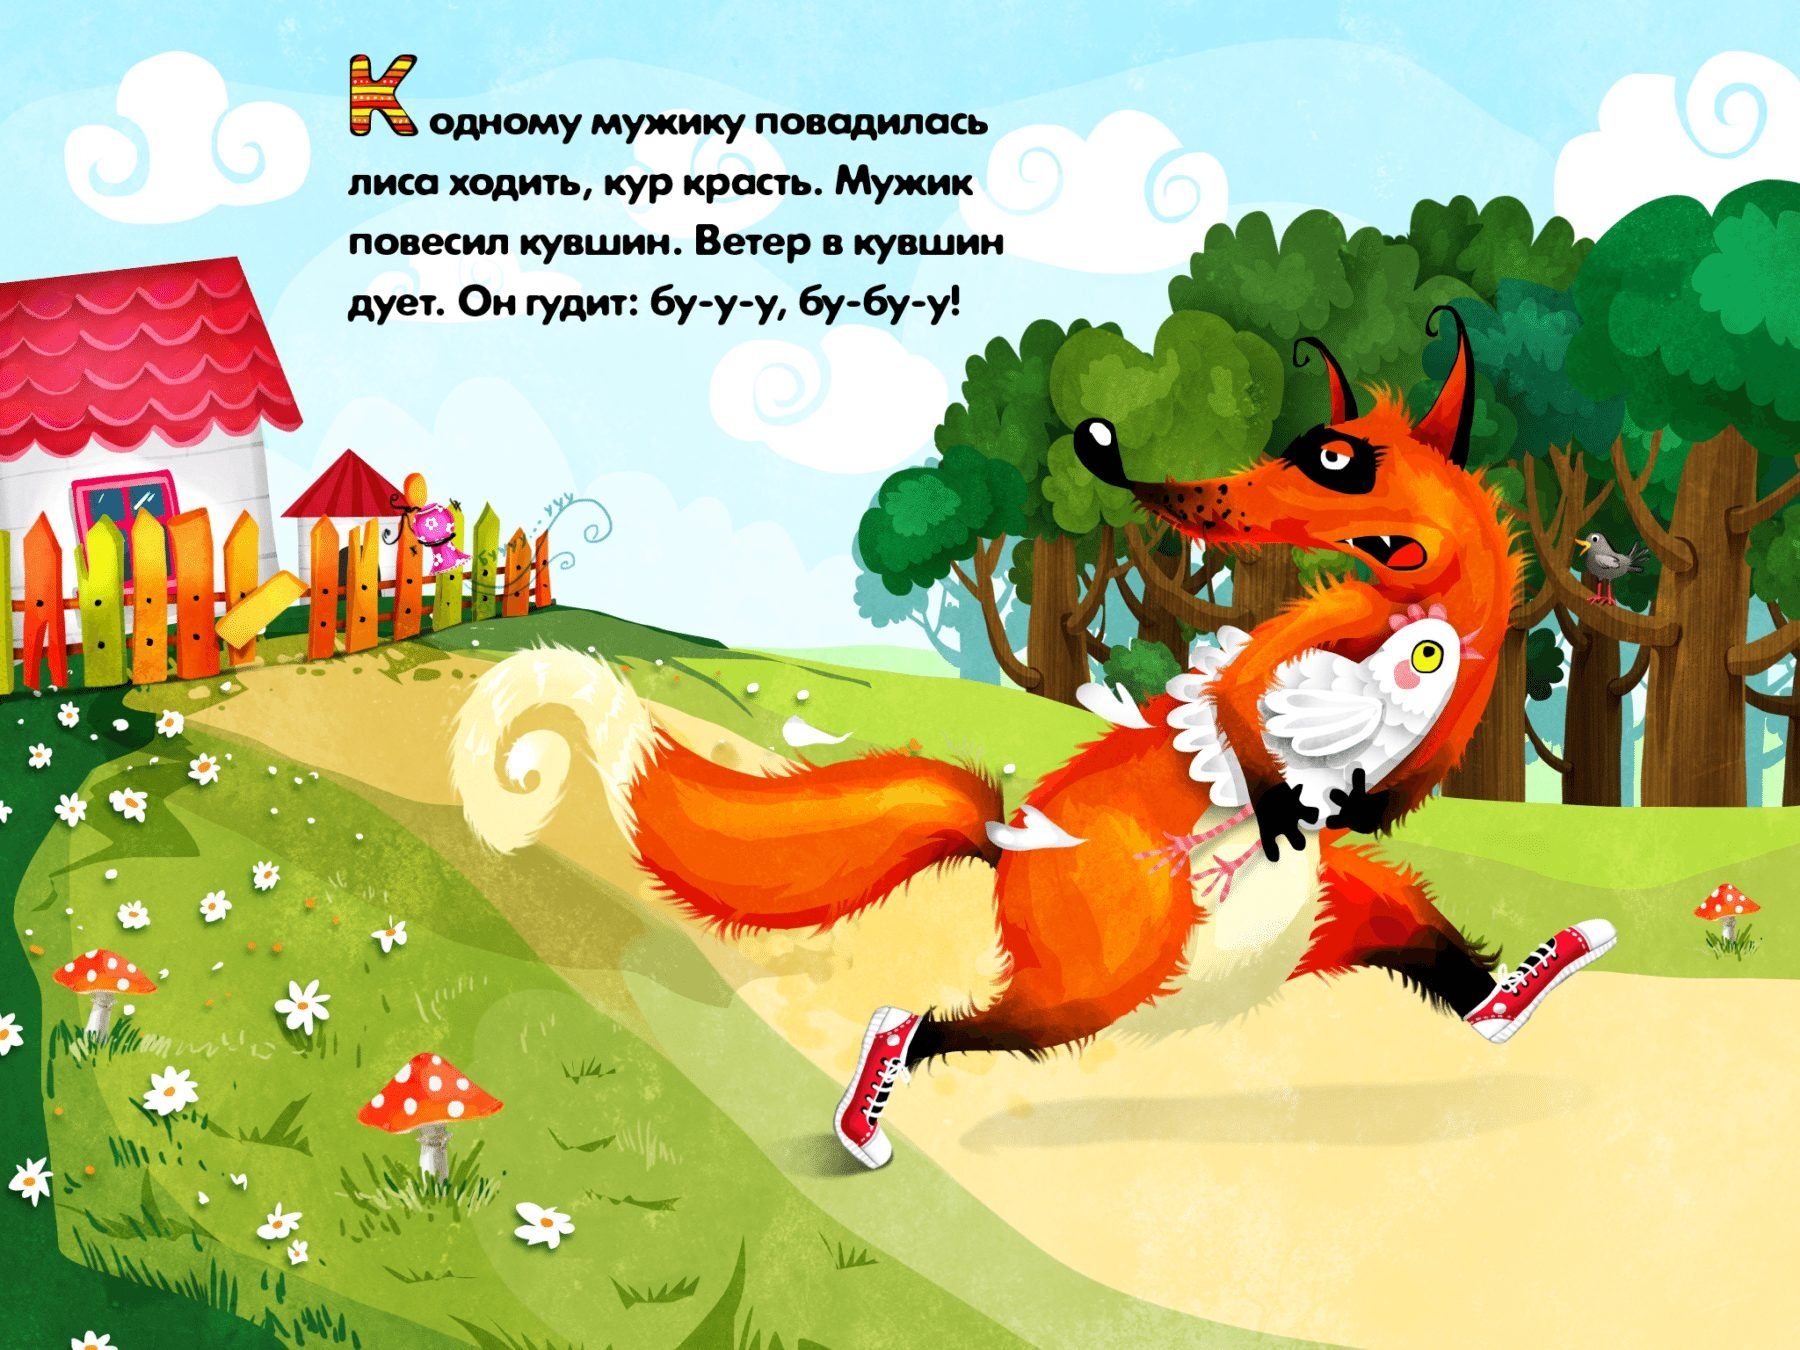 Сказки на ночь лиса. Сказки про лису. Сказки про лисичку для детей. Сказочная лиса. Сказки про лису русские народные.